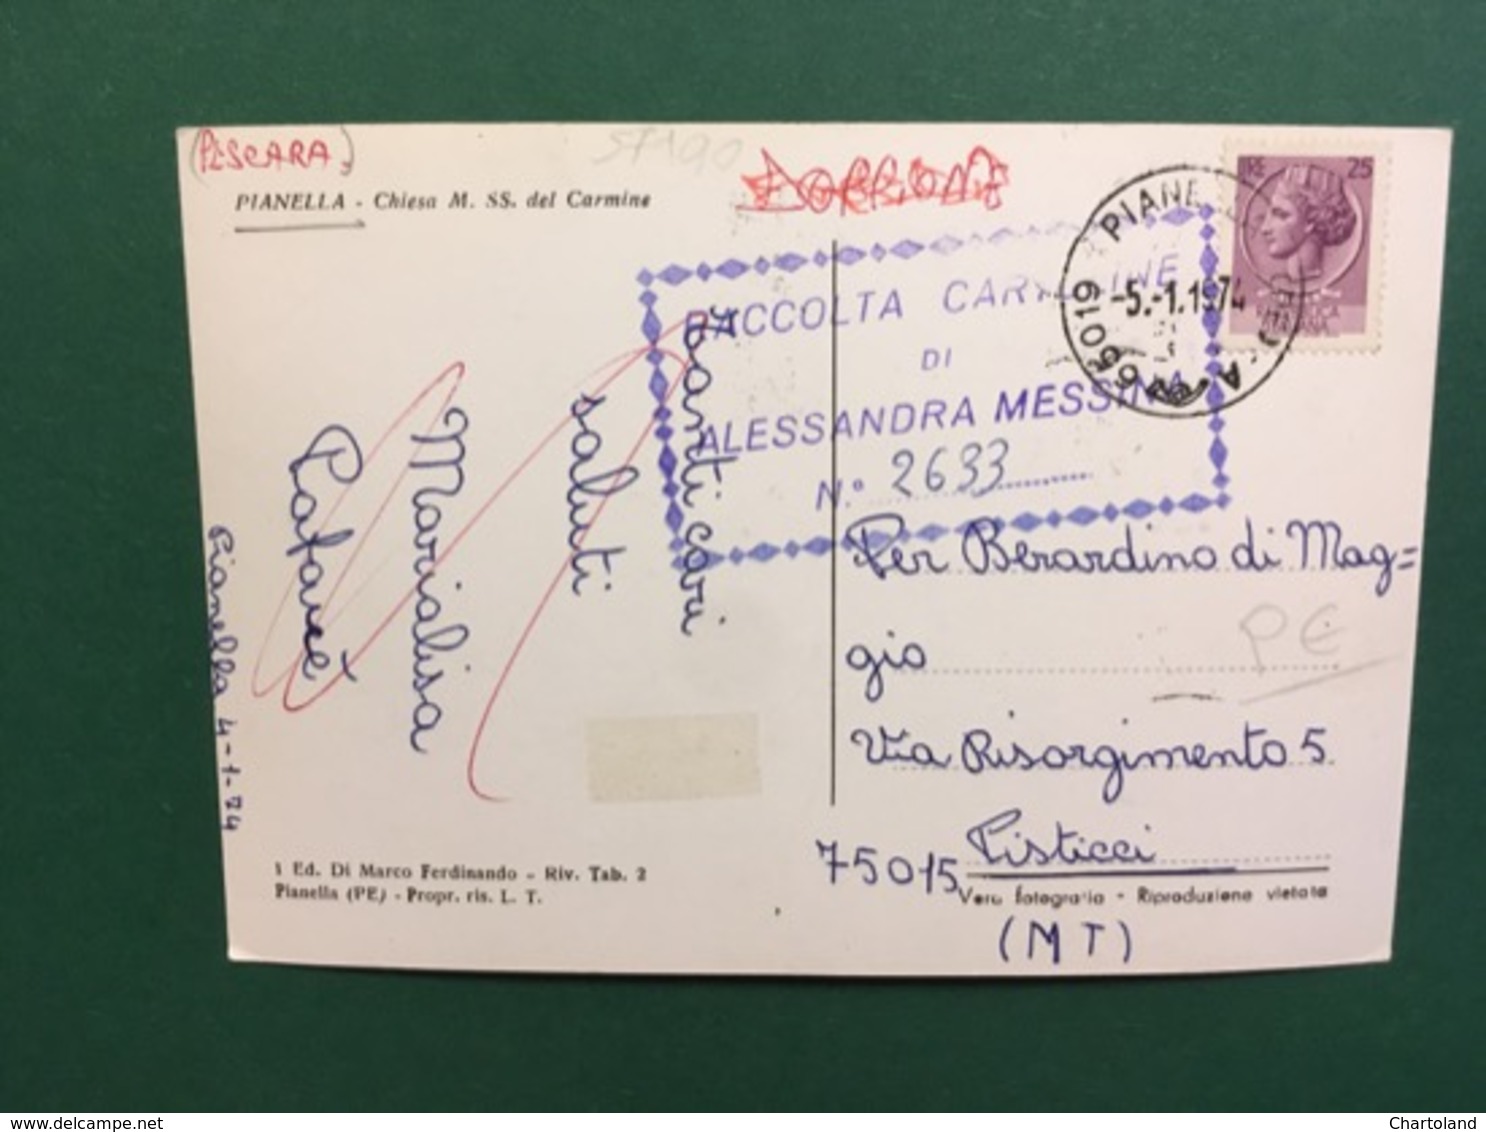 Cartolina Pianella - Chiesa M. SS. Del Carmine - 1974 - Pescara